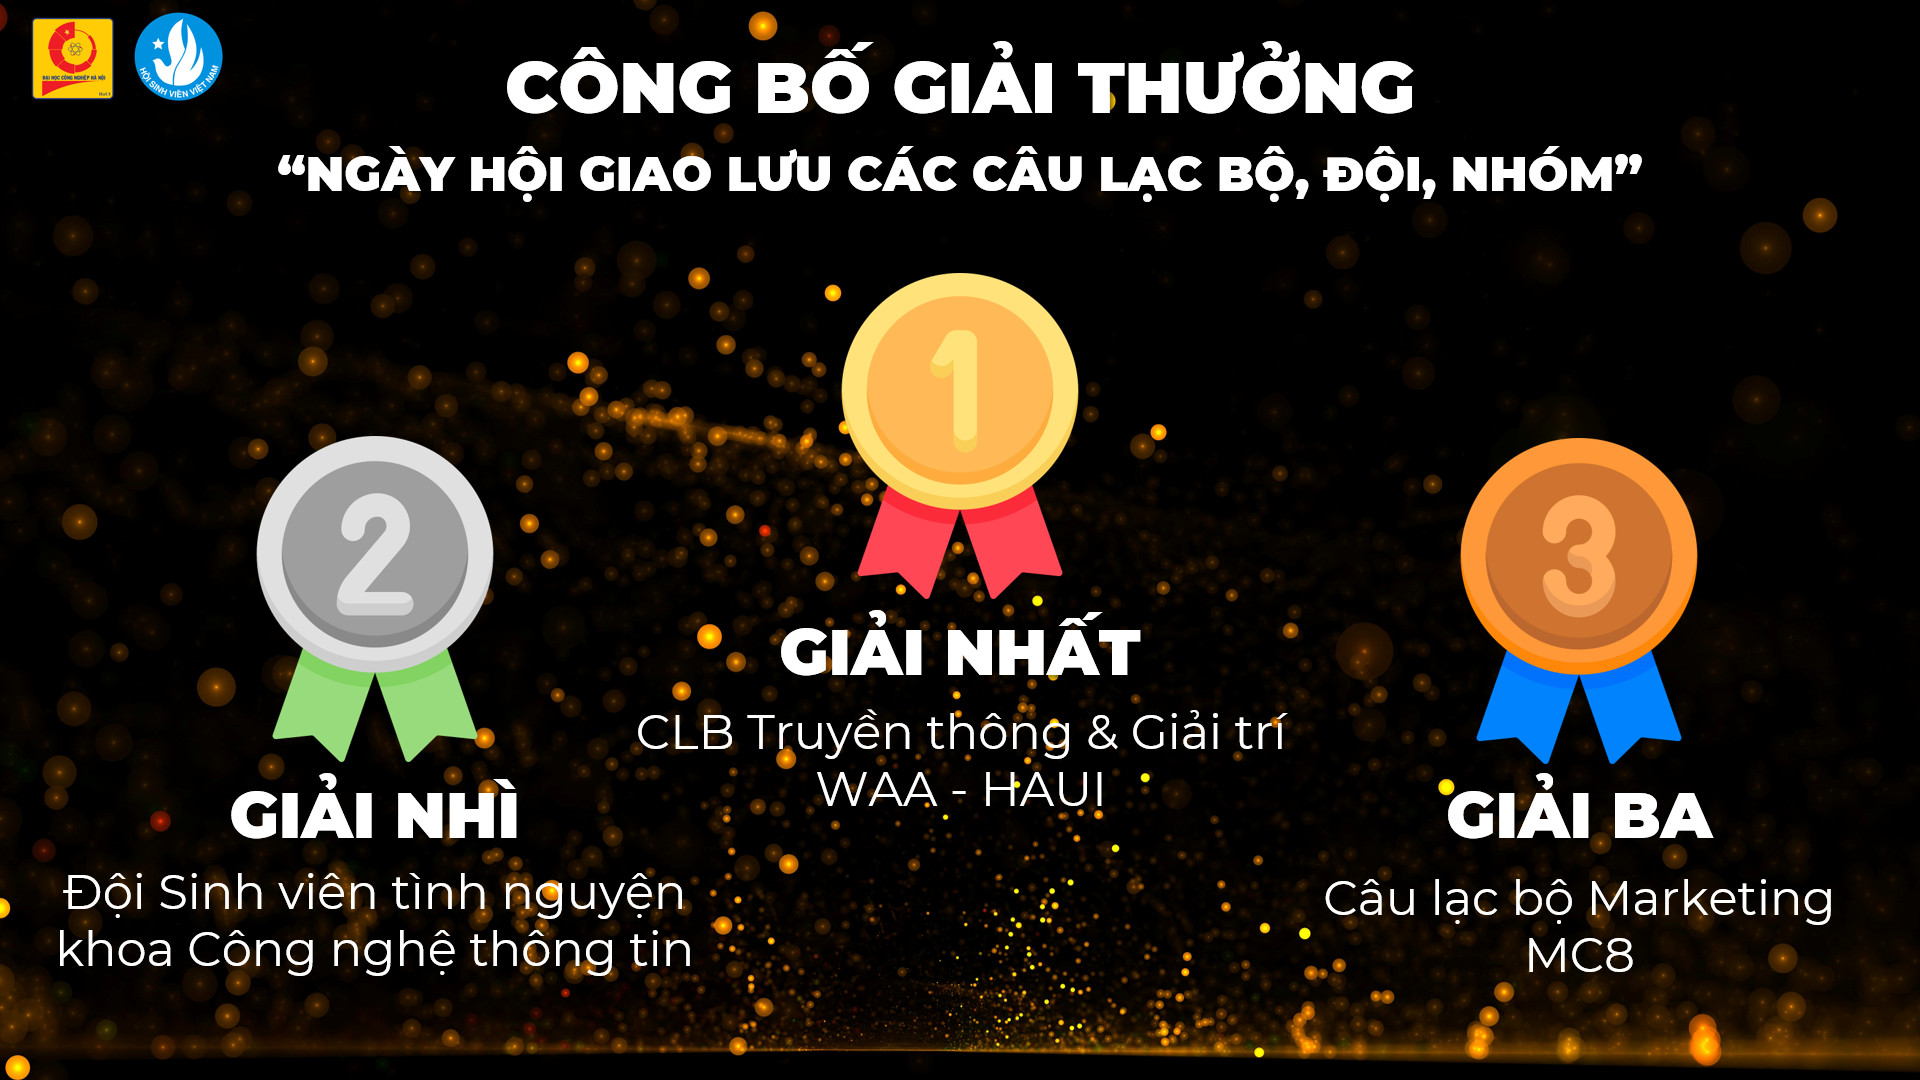 Kỷ niệm 72 năm Ngày truyền thống học sinh sinh viên và Hội Sinh viên Việt Nam (09/01/1950 - 09/01/2021) và tuyên dương “Sinh viên 5 tốt” các cấp và giải thưởng sao tháng Giêng năm 2021